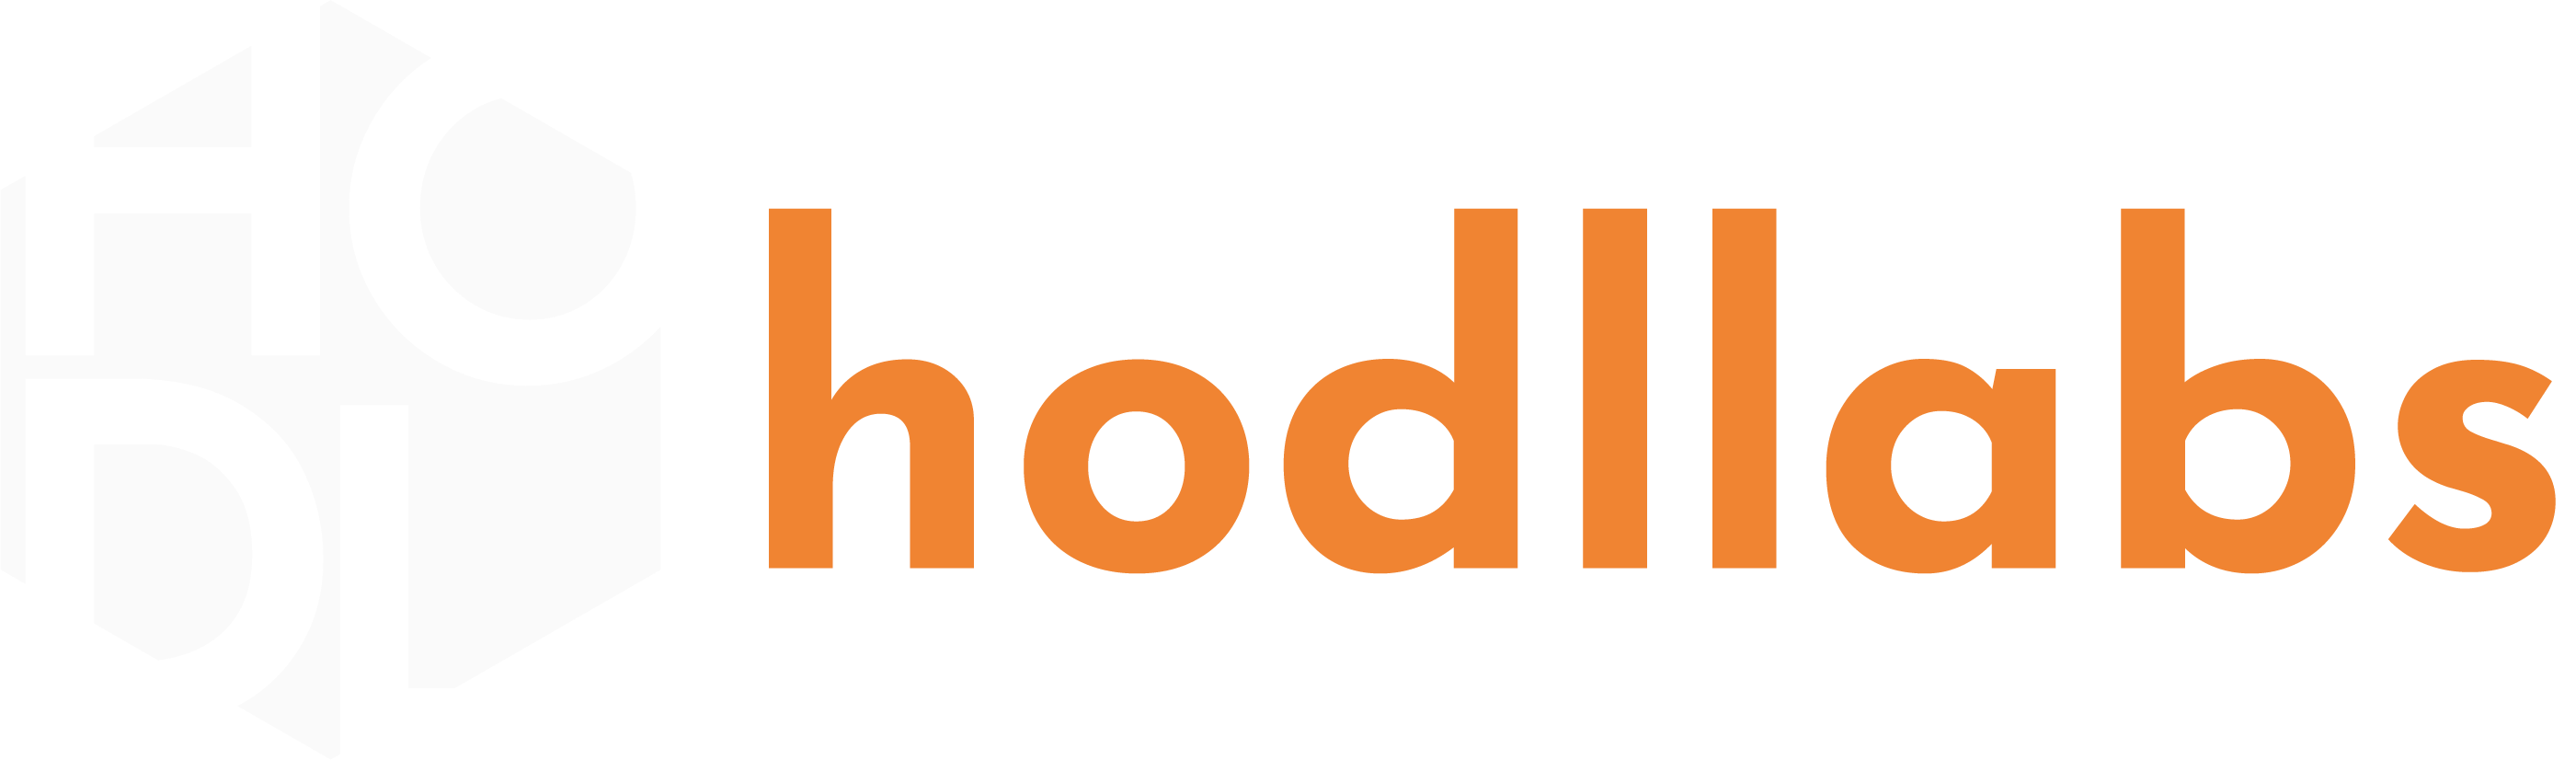 hodllabs-footer-logo